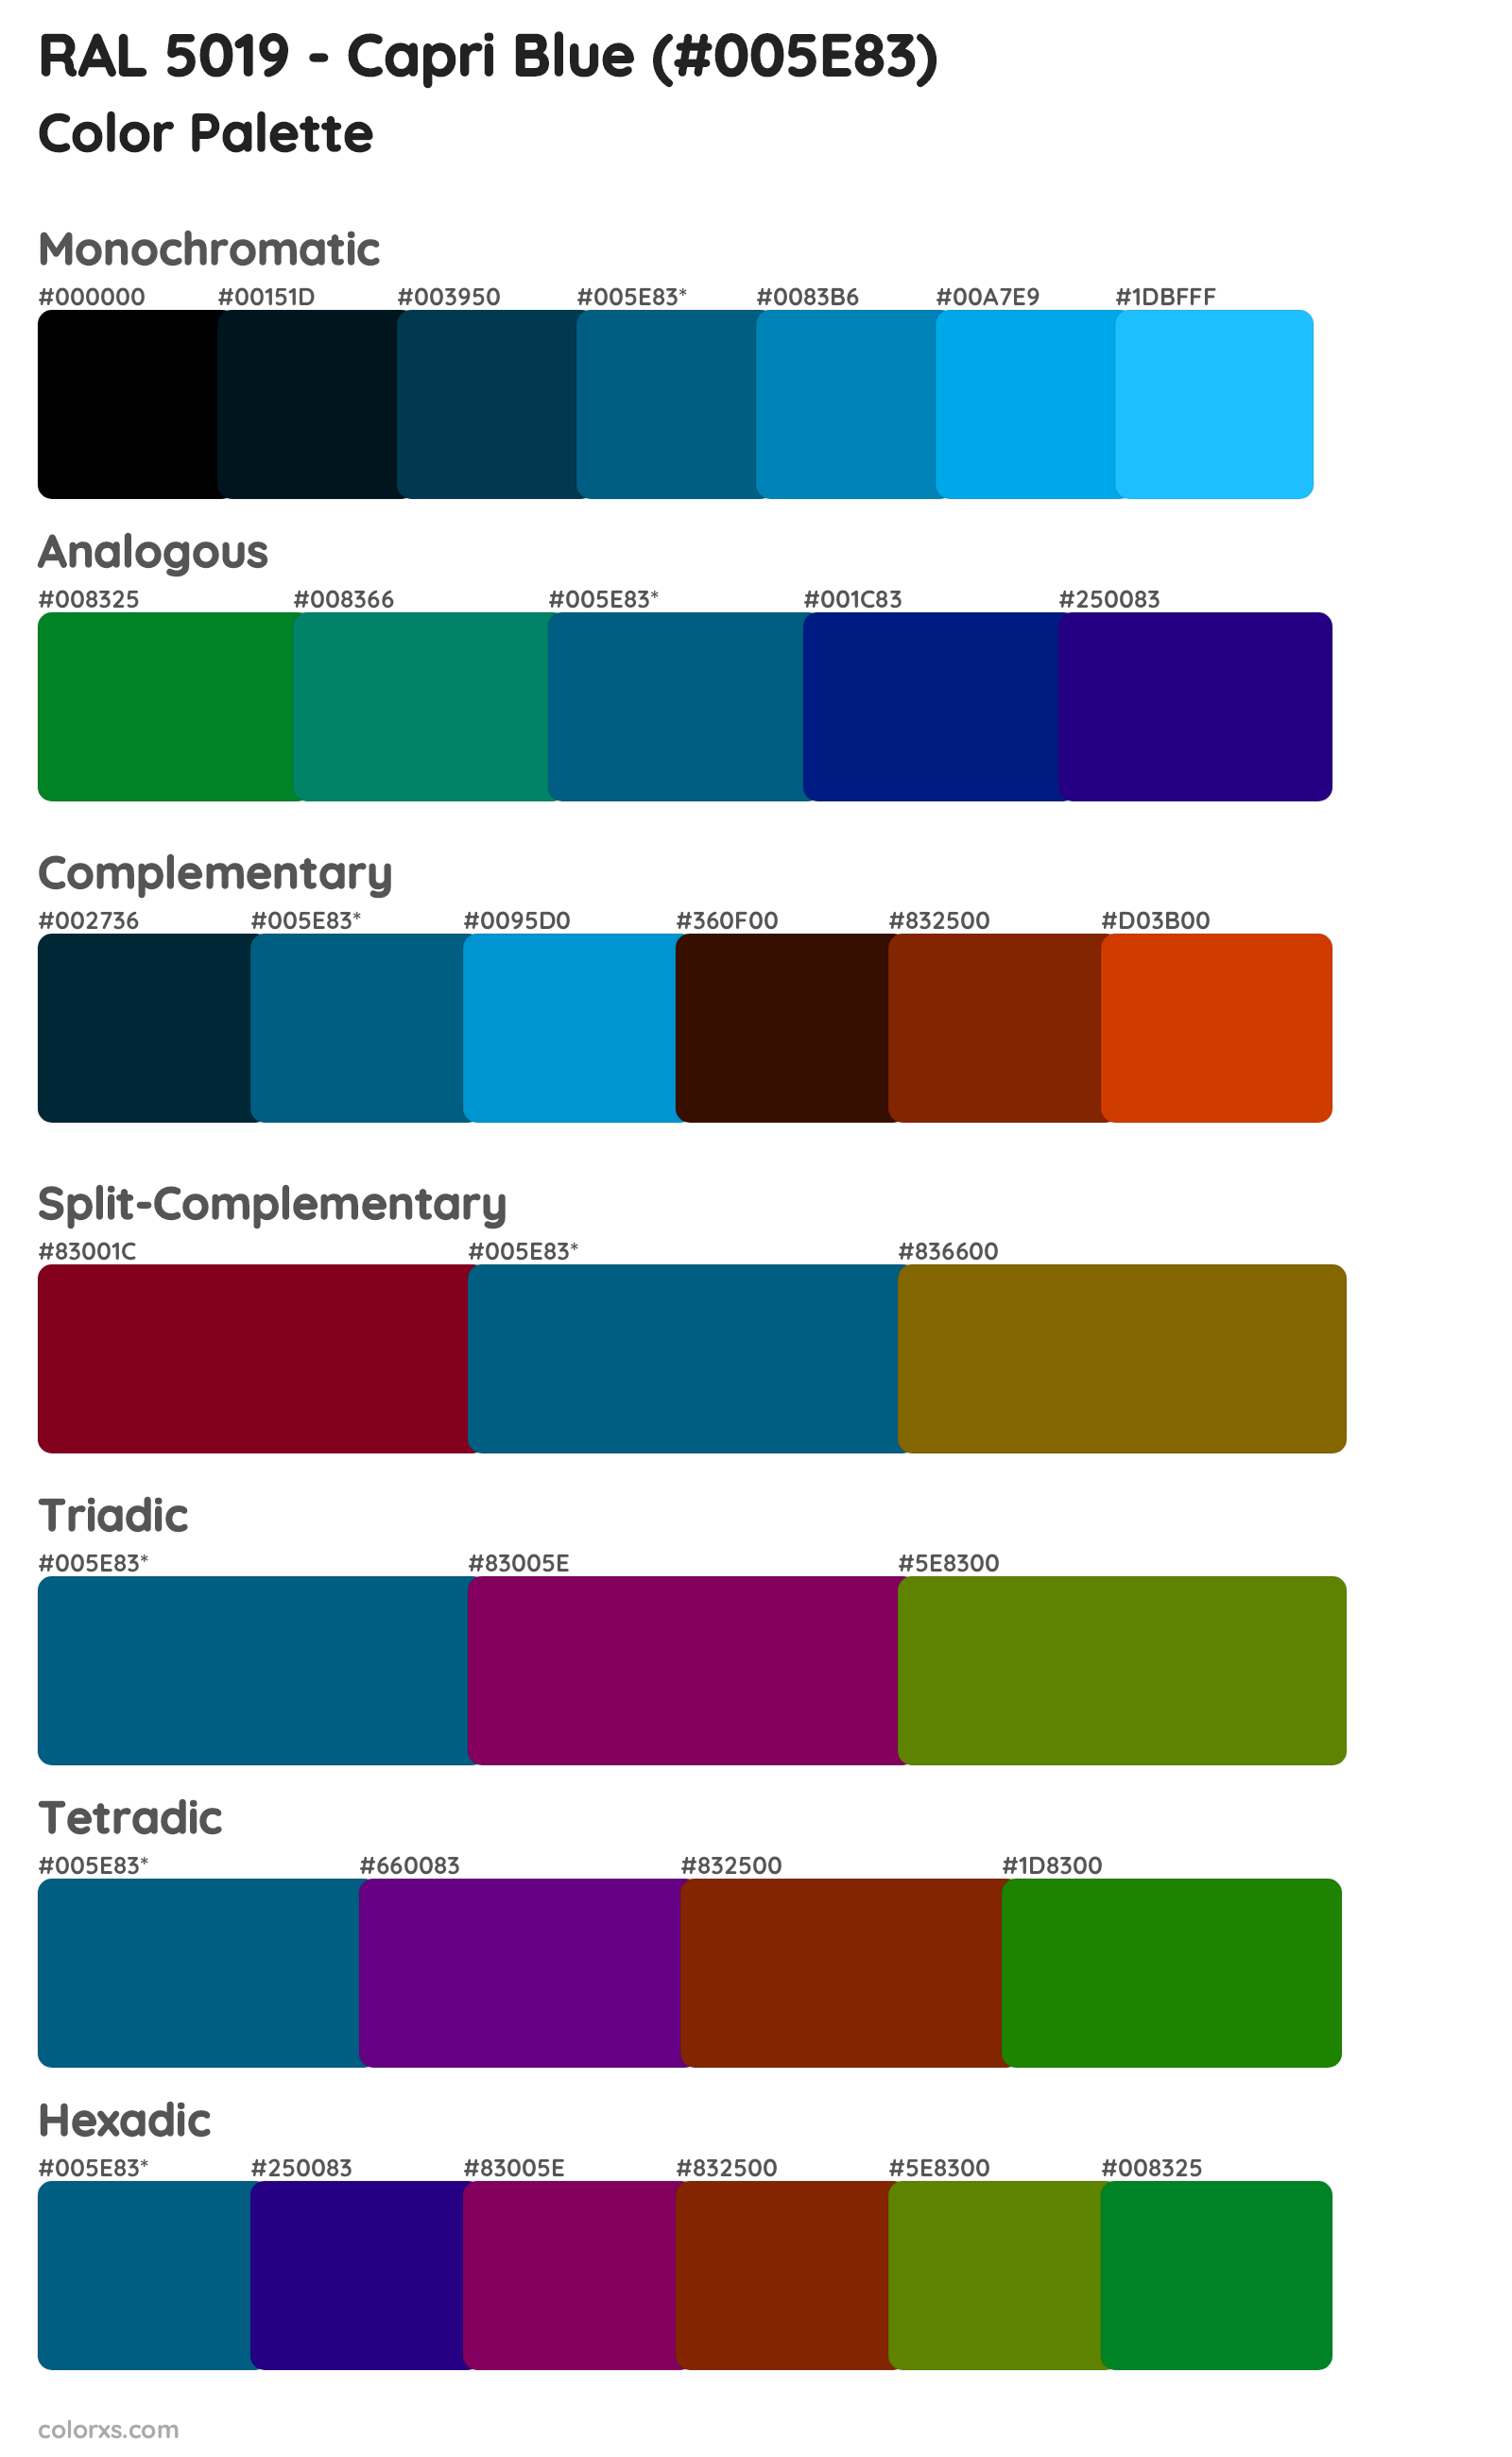 RAL 5019 - Capri Blue Color Scheme Palettes